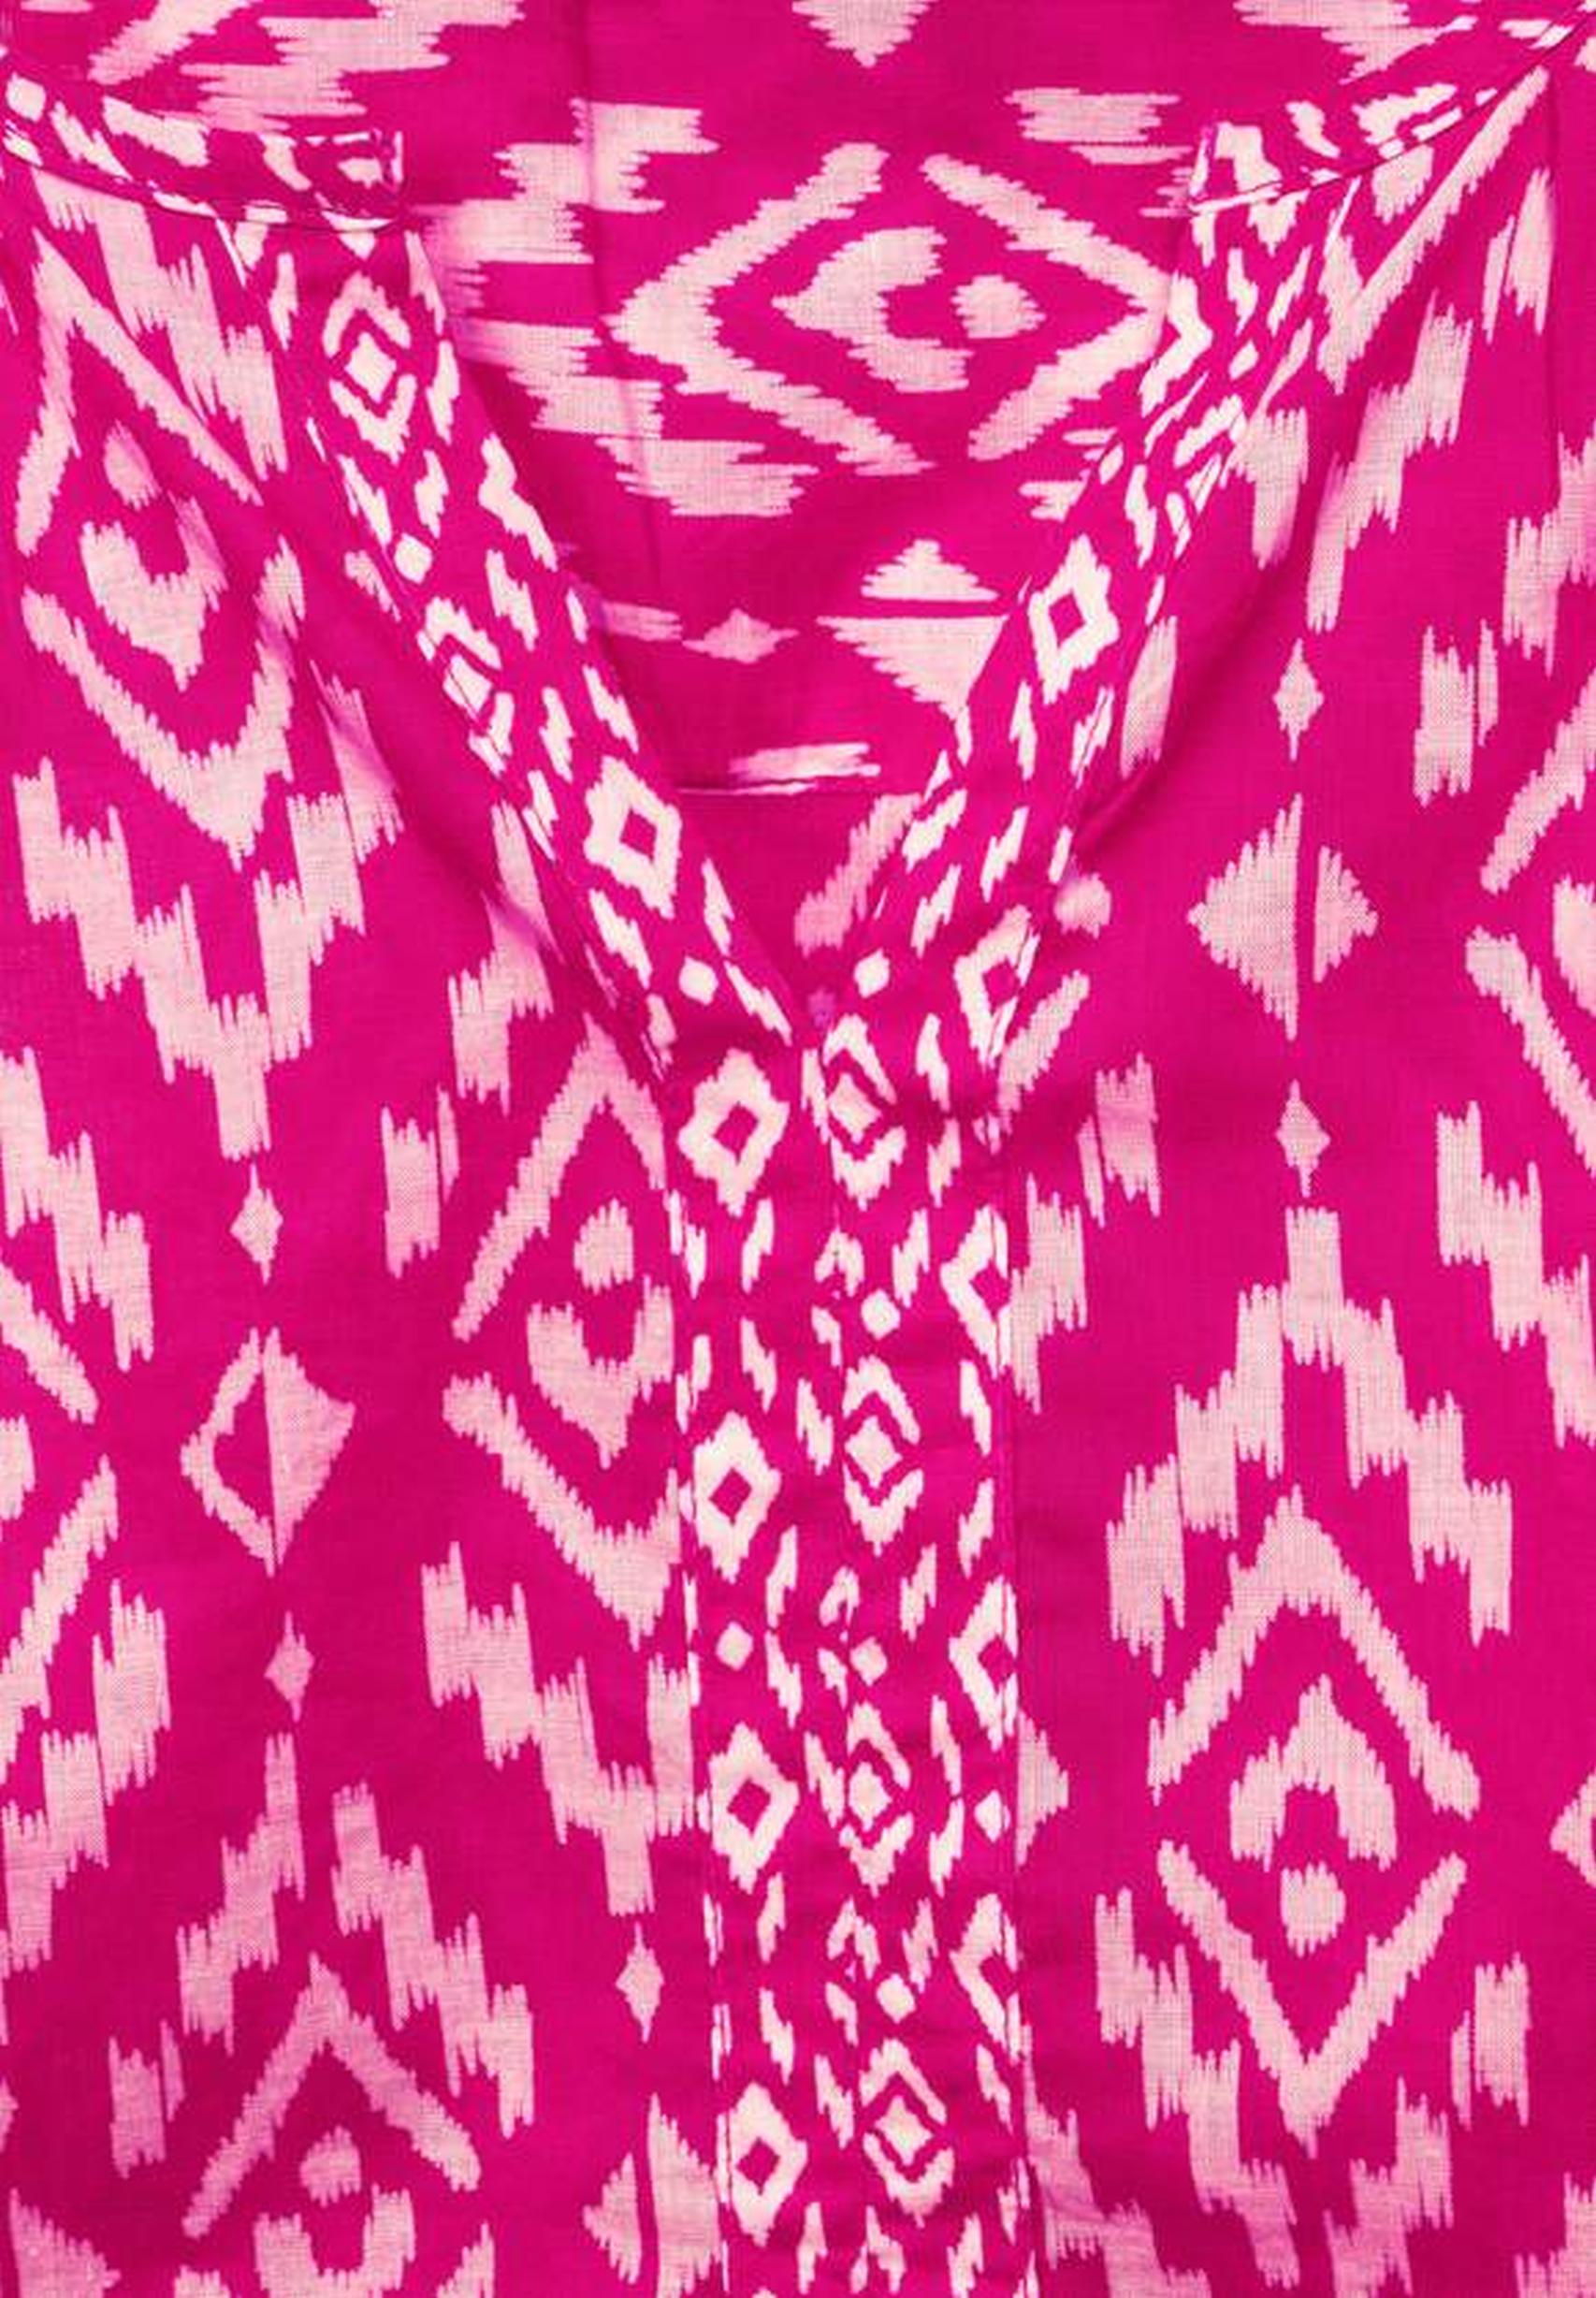 Modische Bluse aus der Kollektion von CECIL in Raspberry Pink 343270